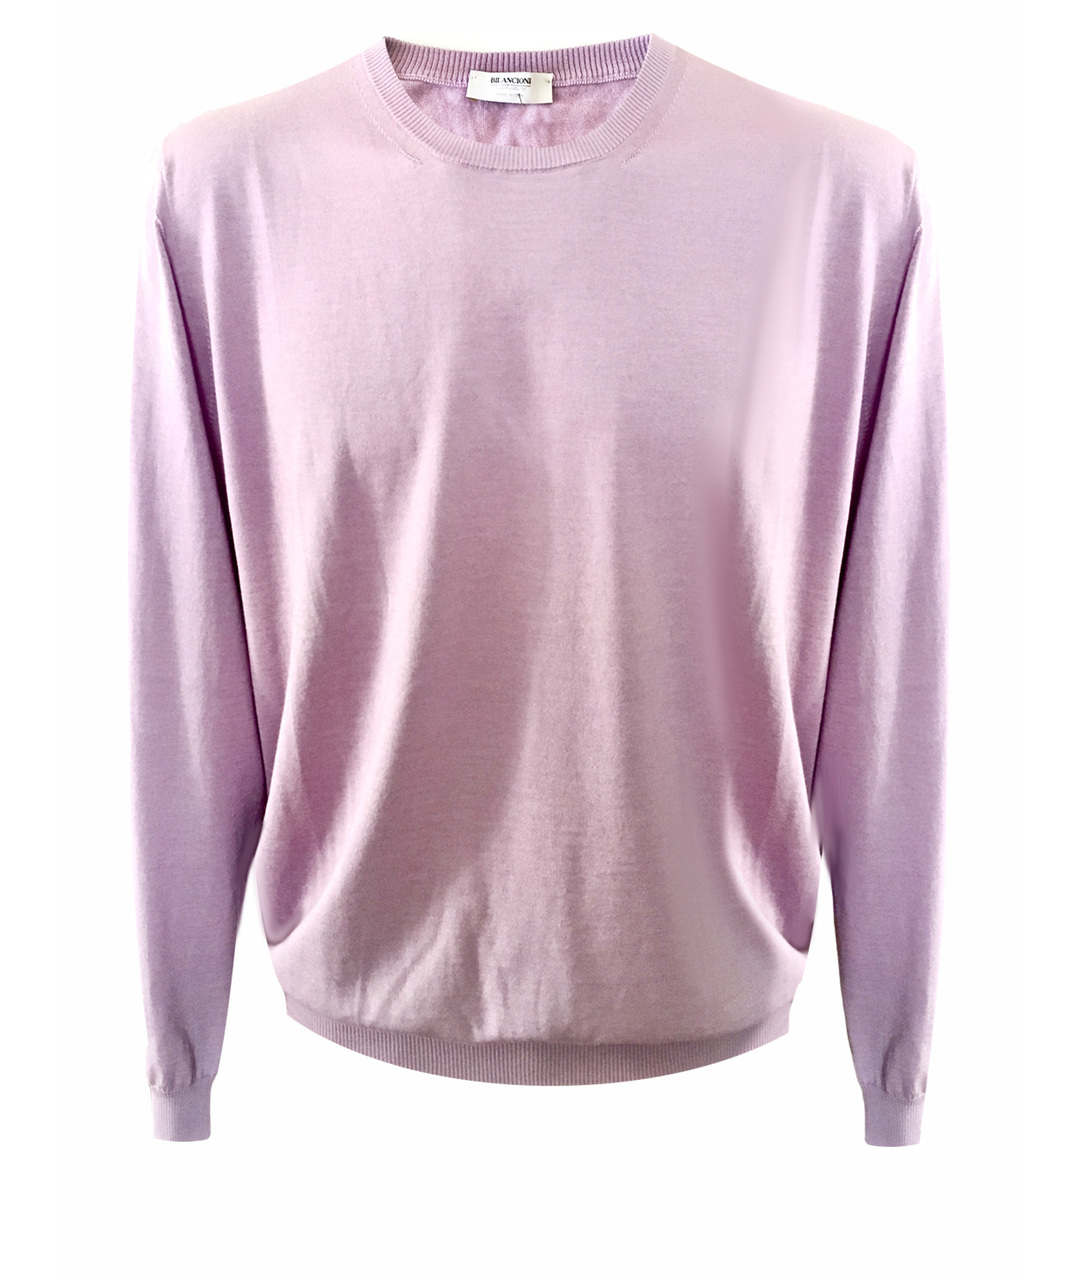 BILANCIONI Фиолетовый кашемировый джемпер / свитер, фото 1